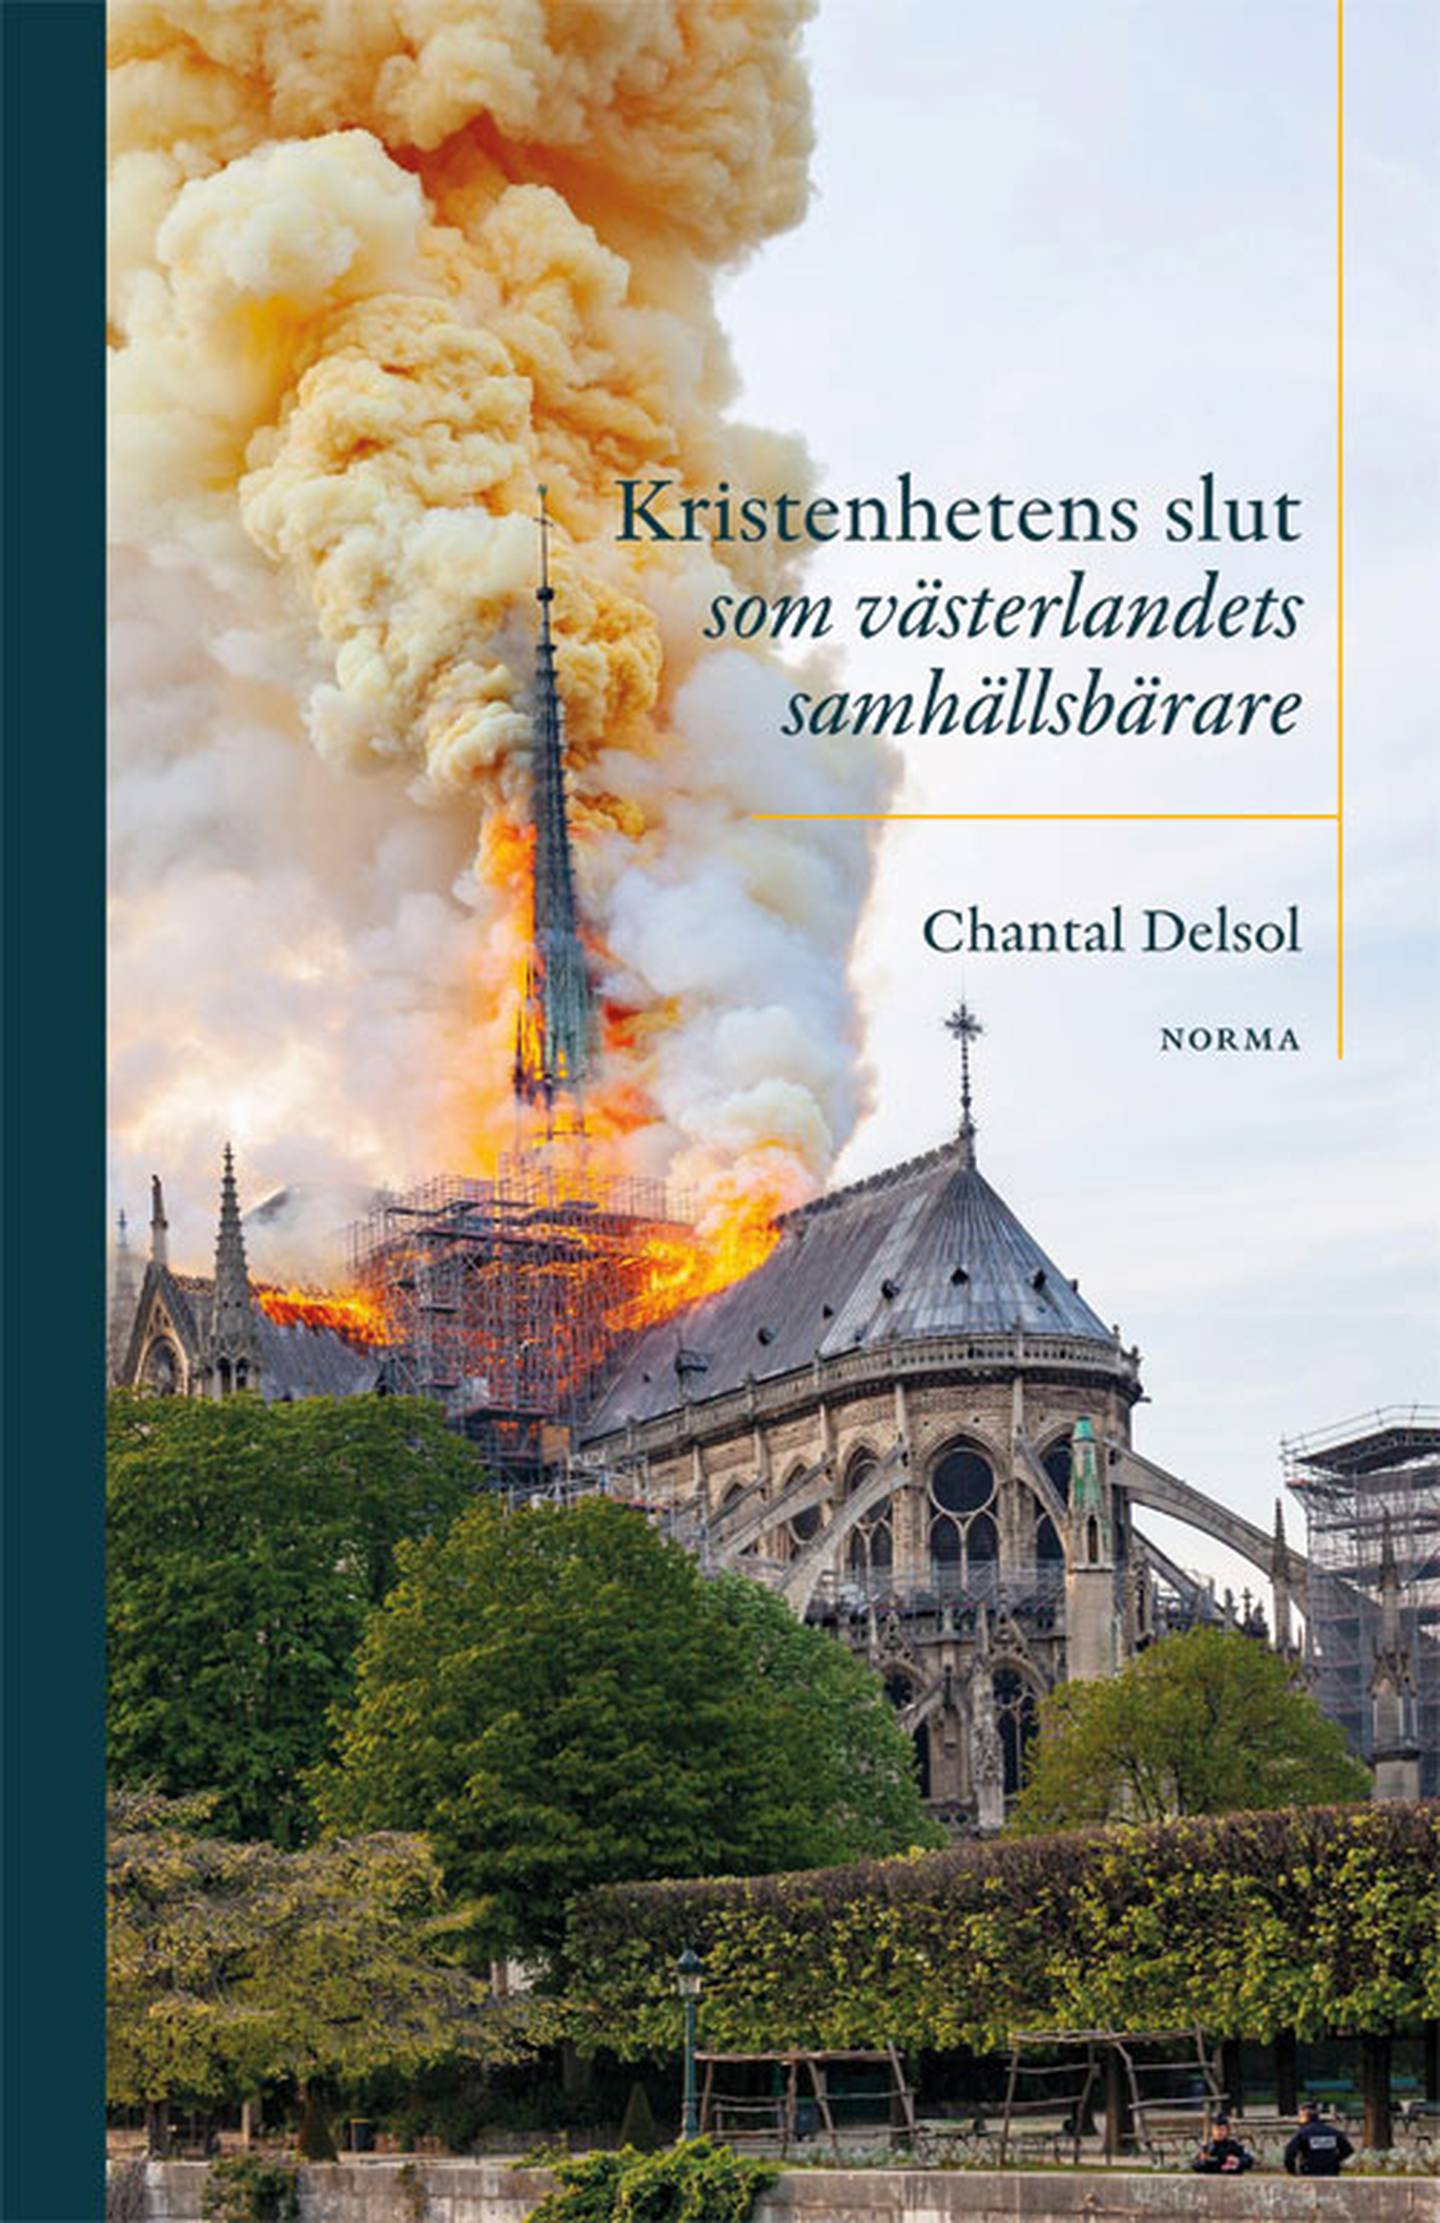 “Kristenheten slut som västerlandets samhällsbärare” av Chantal Delsol.